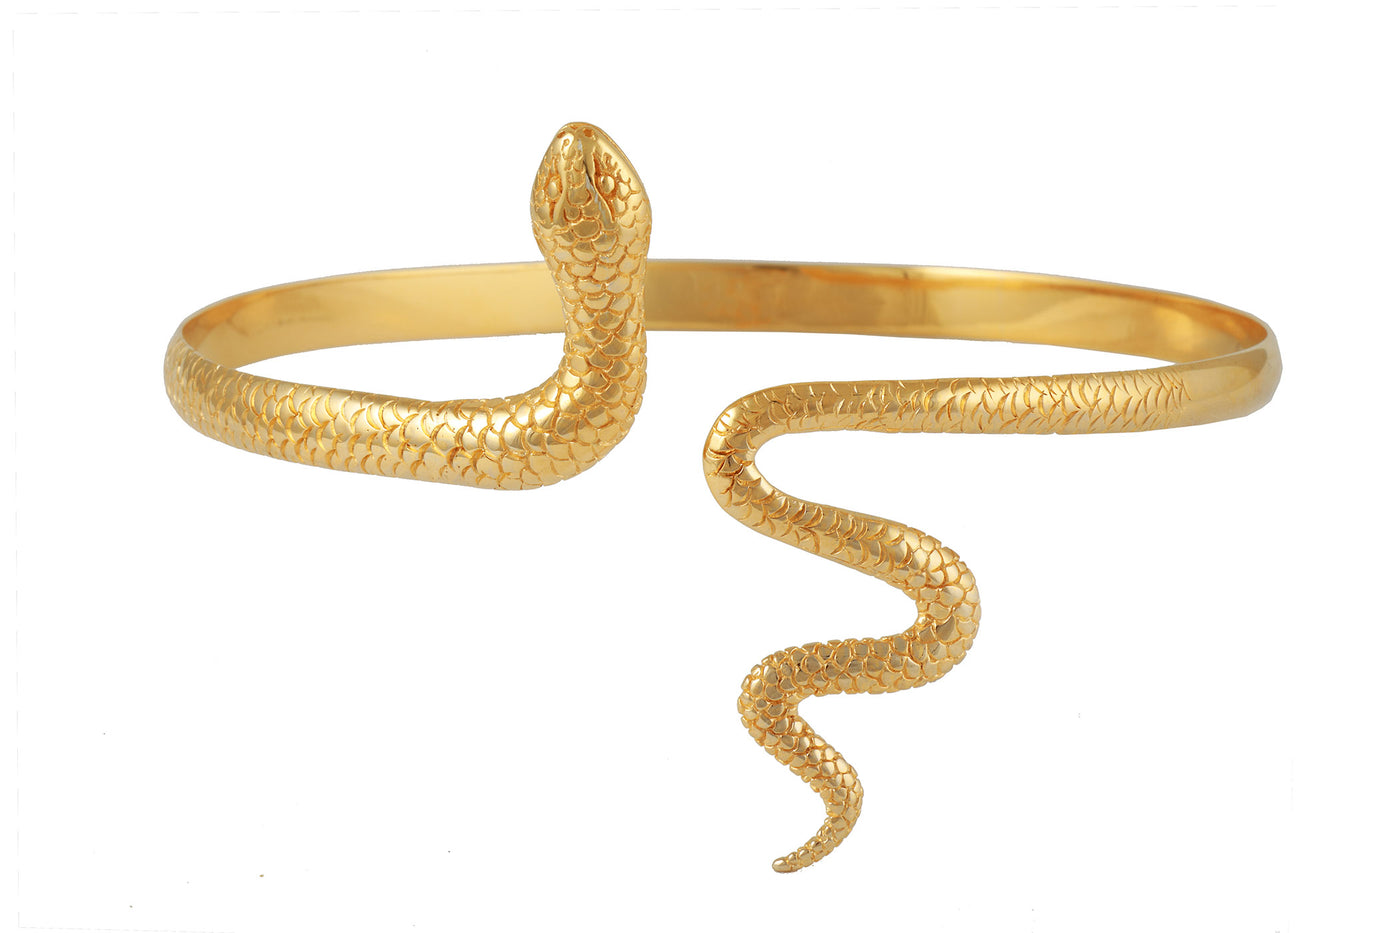 Snake shoulded bracelet. Gold plated